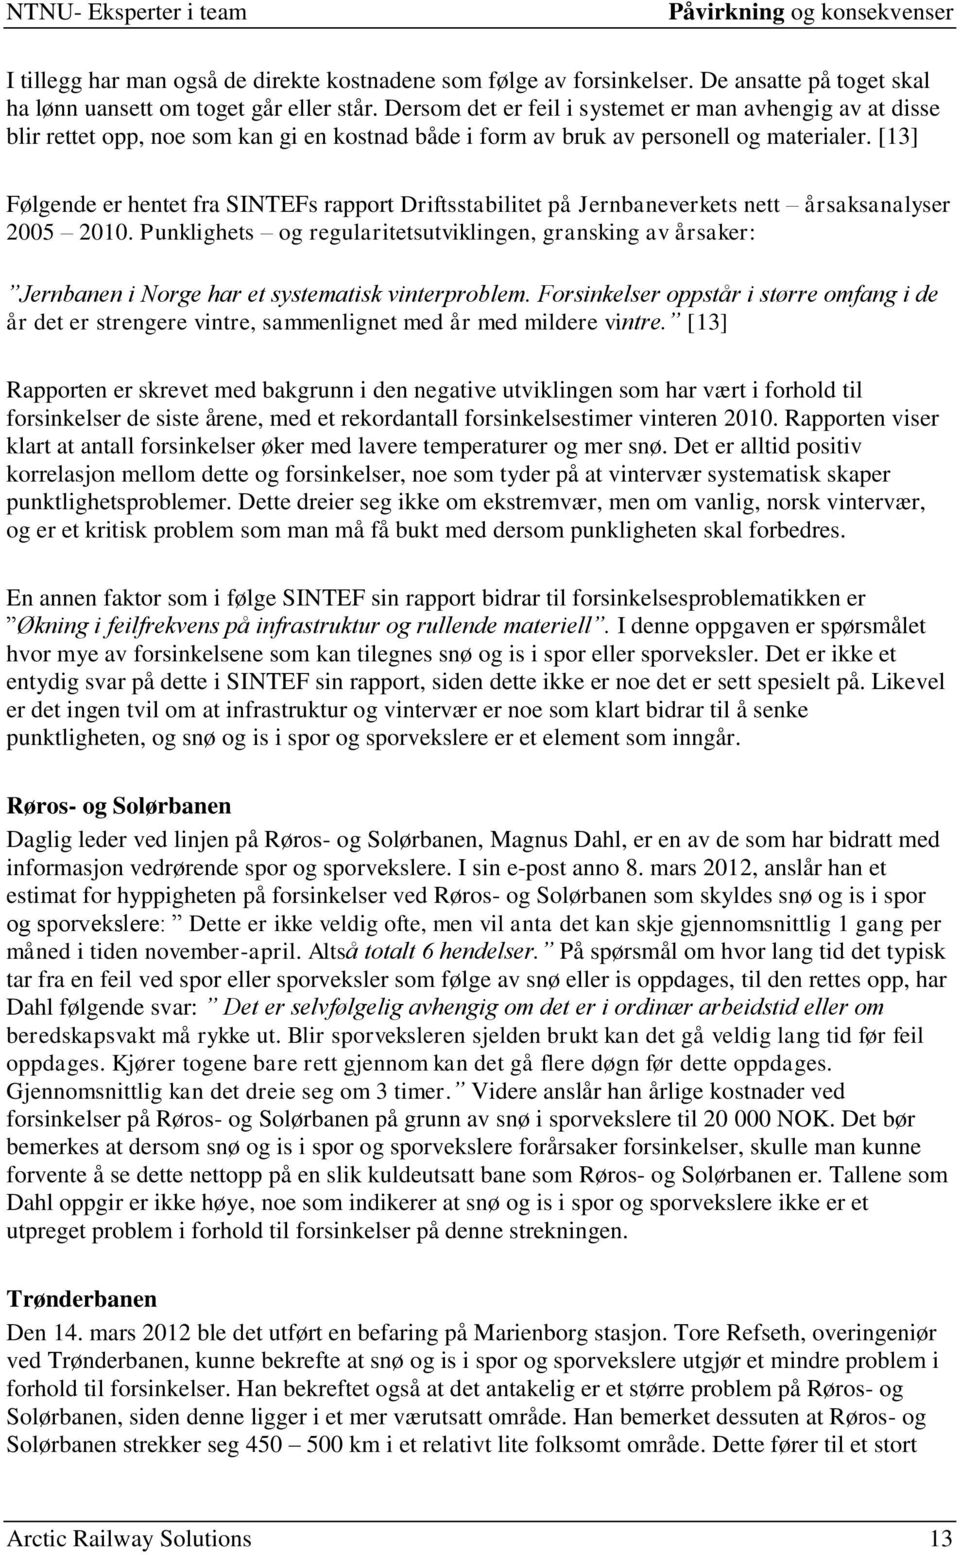 [13] Følgende er hentet fra SINTEFs rapport Driftsstabilitet på Jernbaneverkets nett årsaksanalyser 2005 2010.